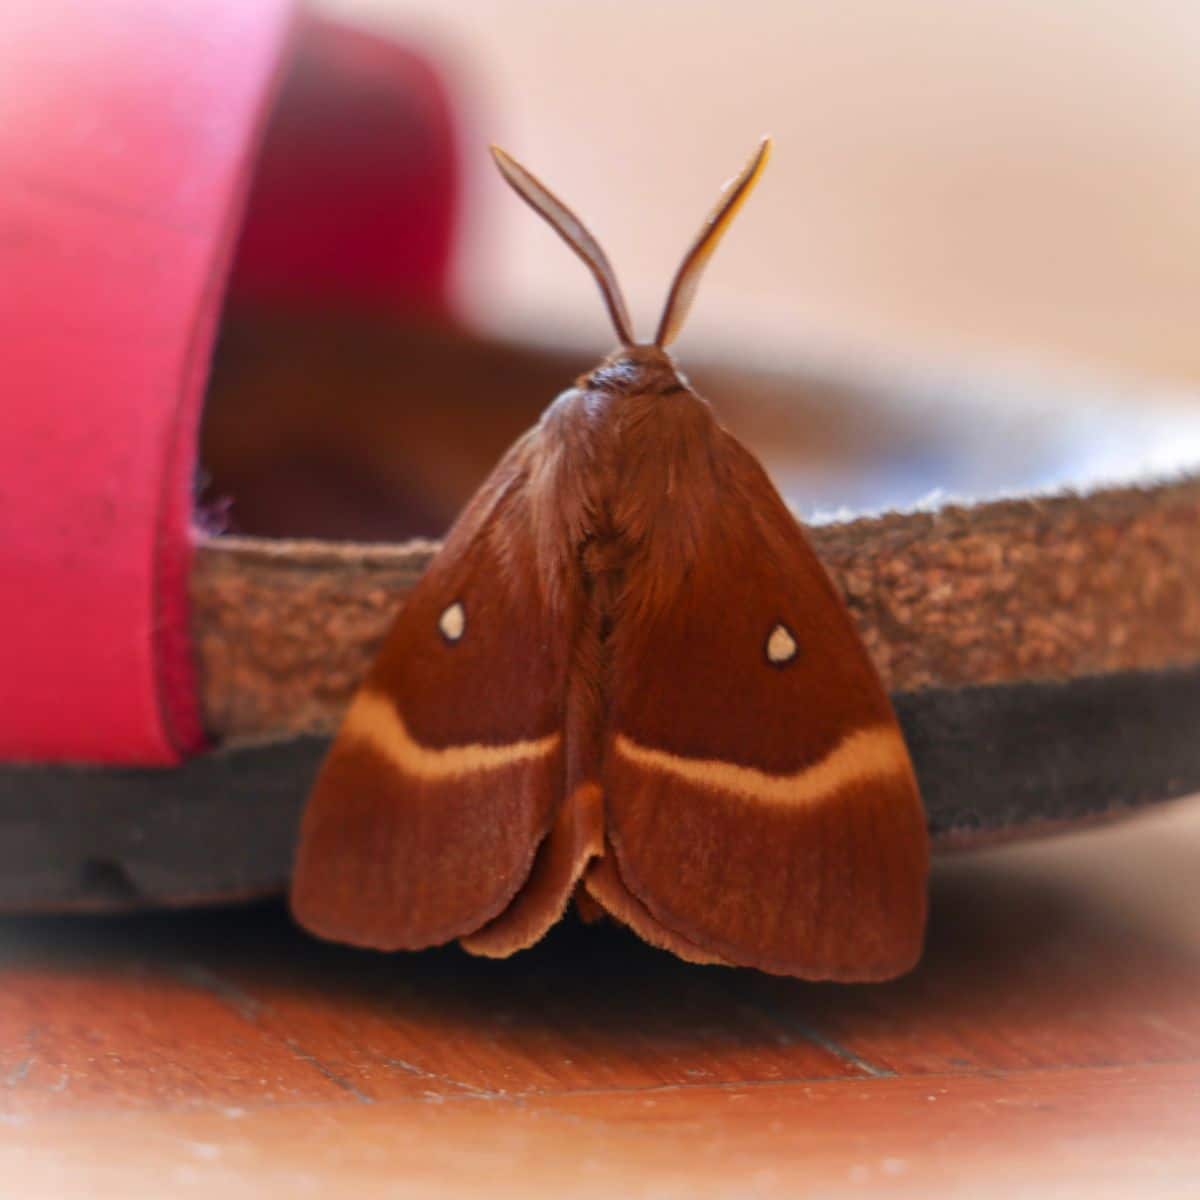 Moth symbolism